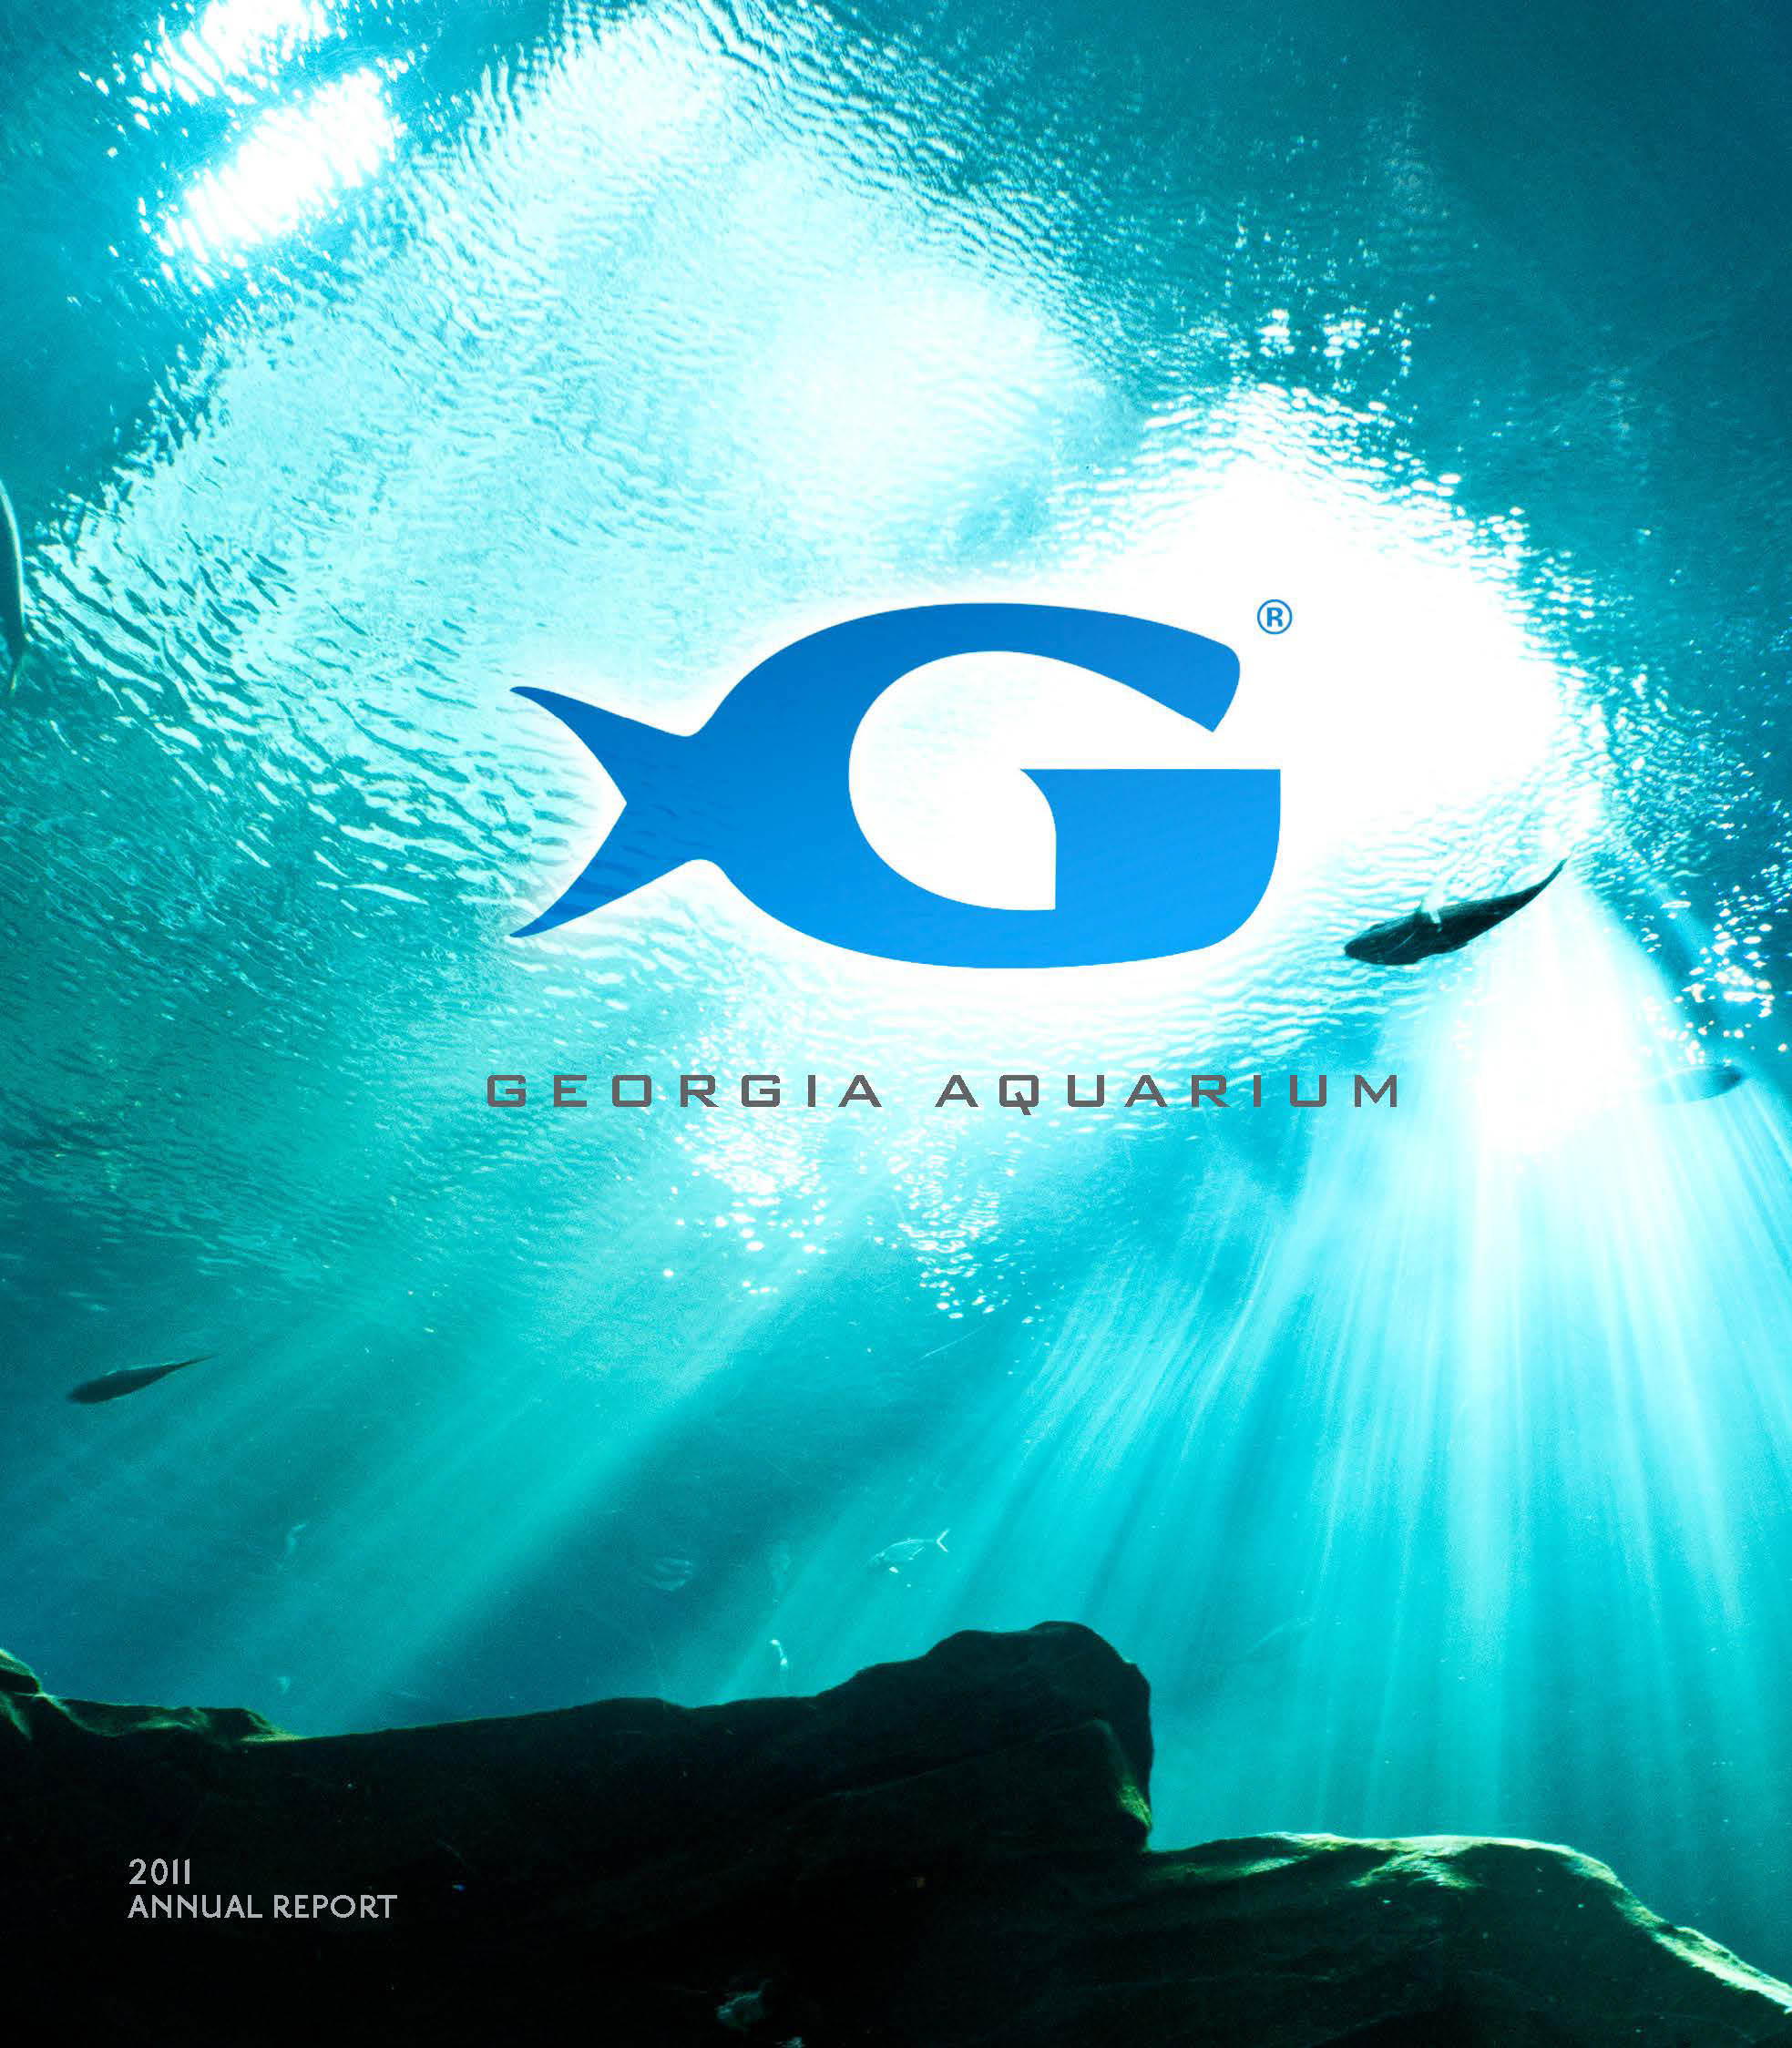 Georgia Aquarium Thanksgiving
 Eric Tirado GA Aquarium Annual Report